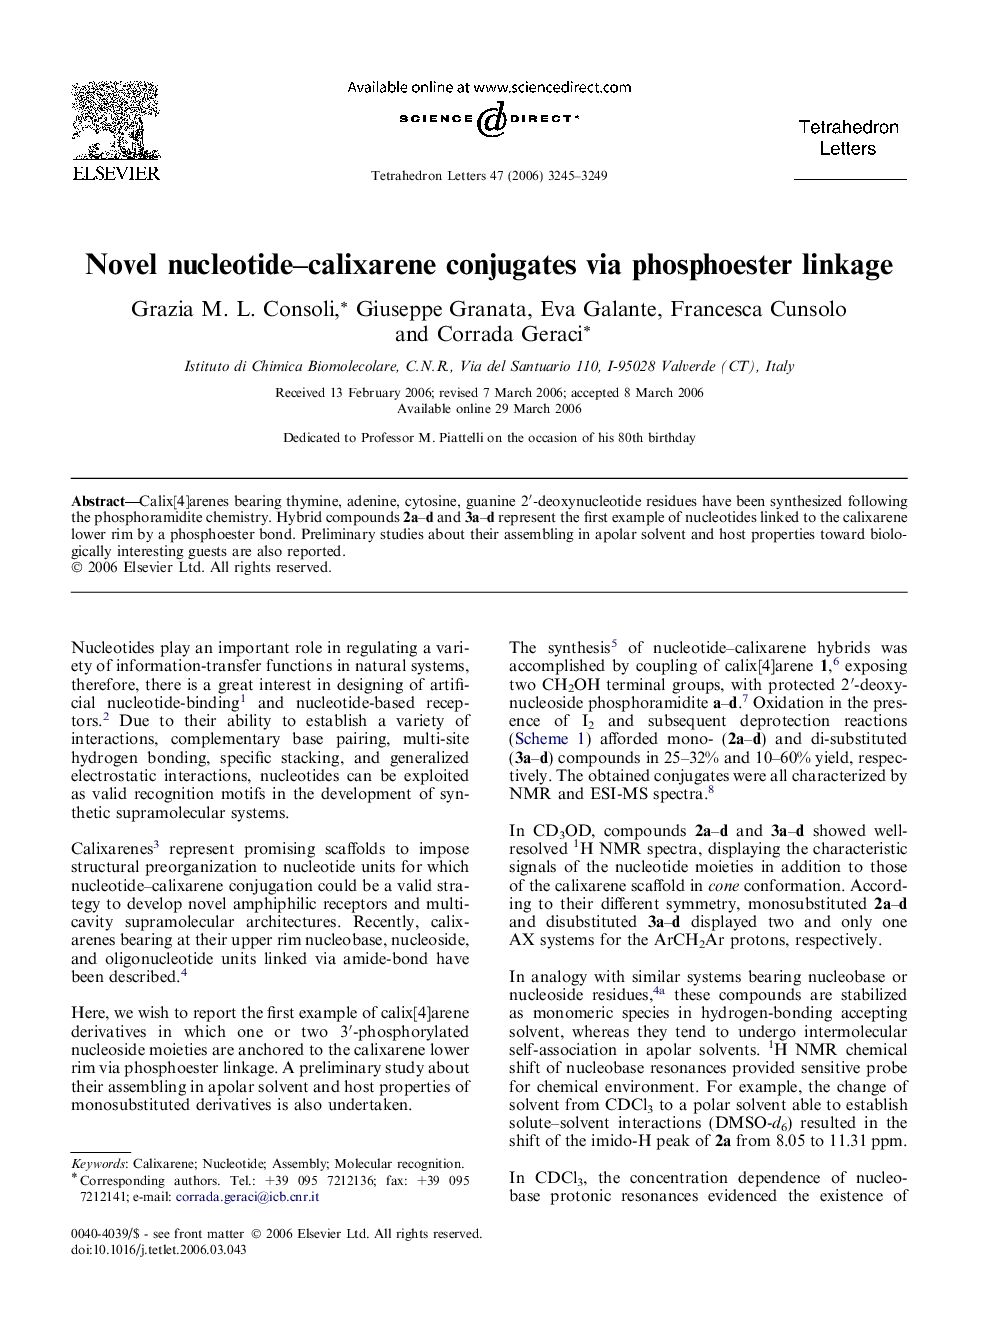 Novel nucleotide-calixarene conjugates via phosphoester linkage